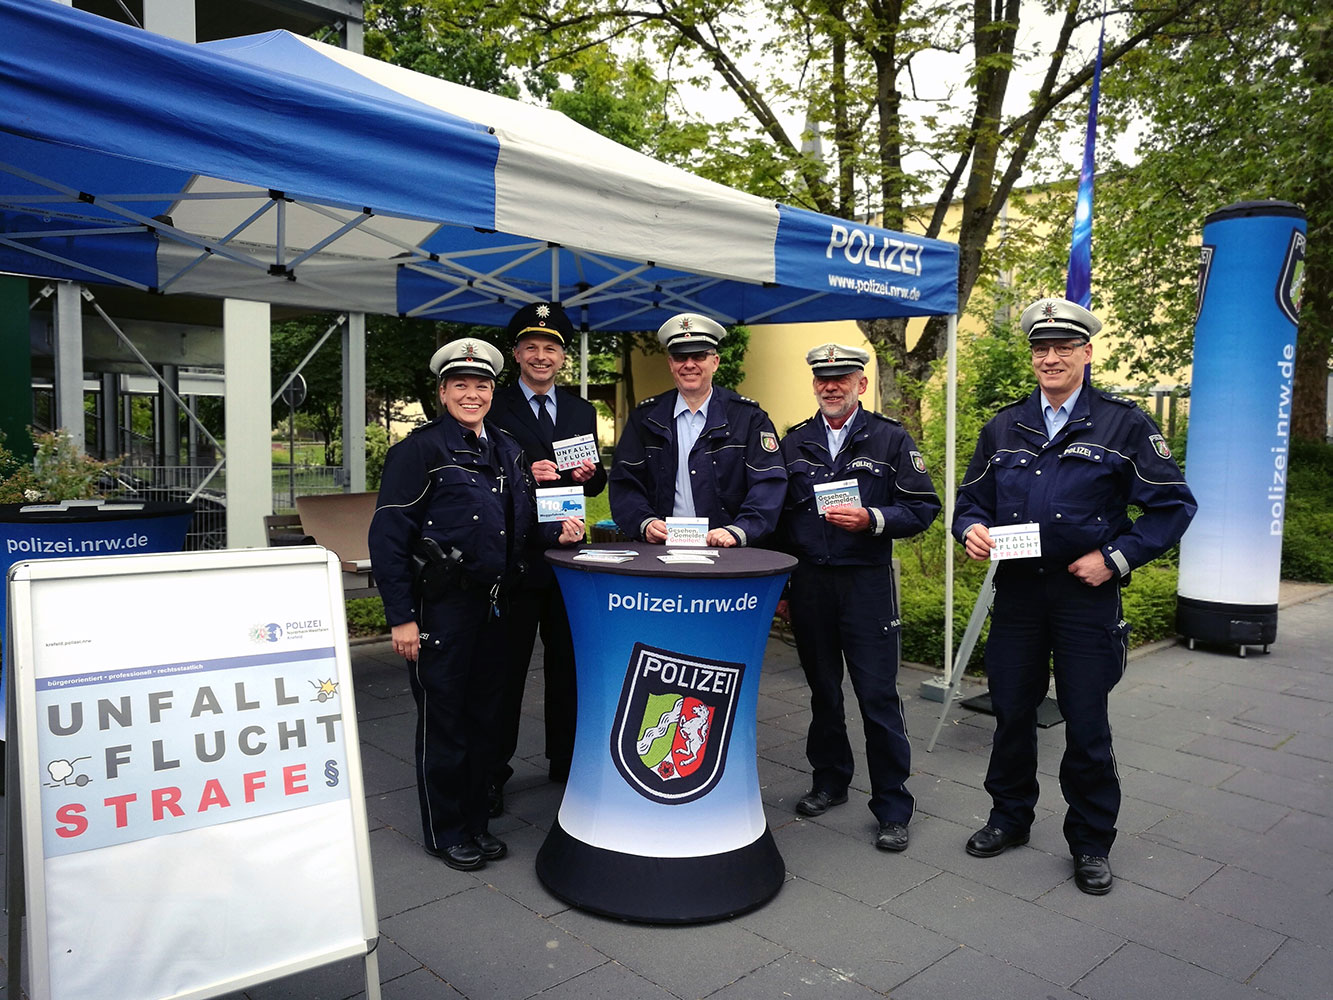 Fünf Polizeibeamte am Aktionsstand halten Postkarten in die Kamera.